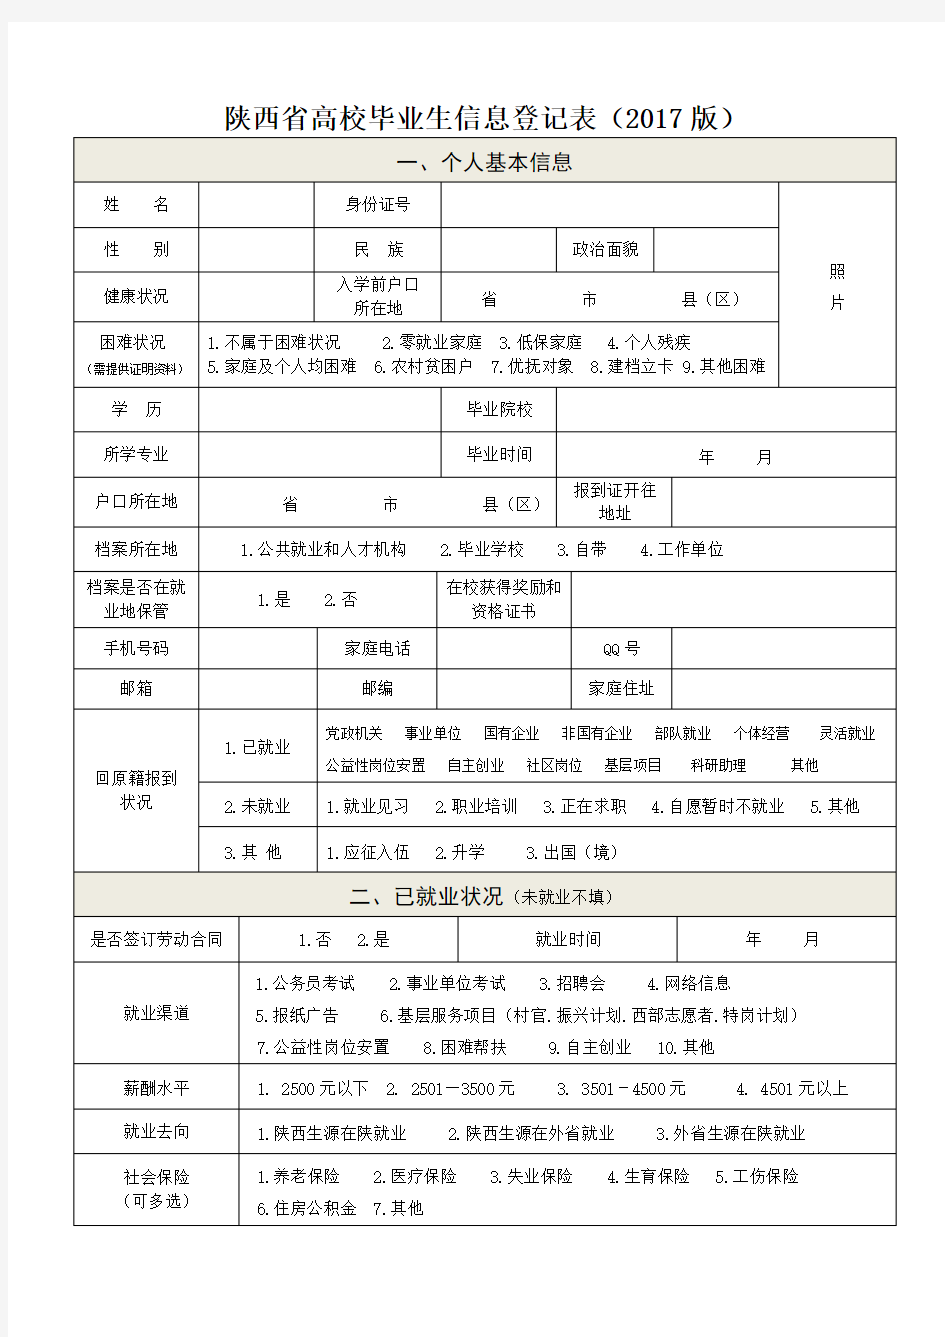 陕西省高校毕业生信息登记表(2017版)